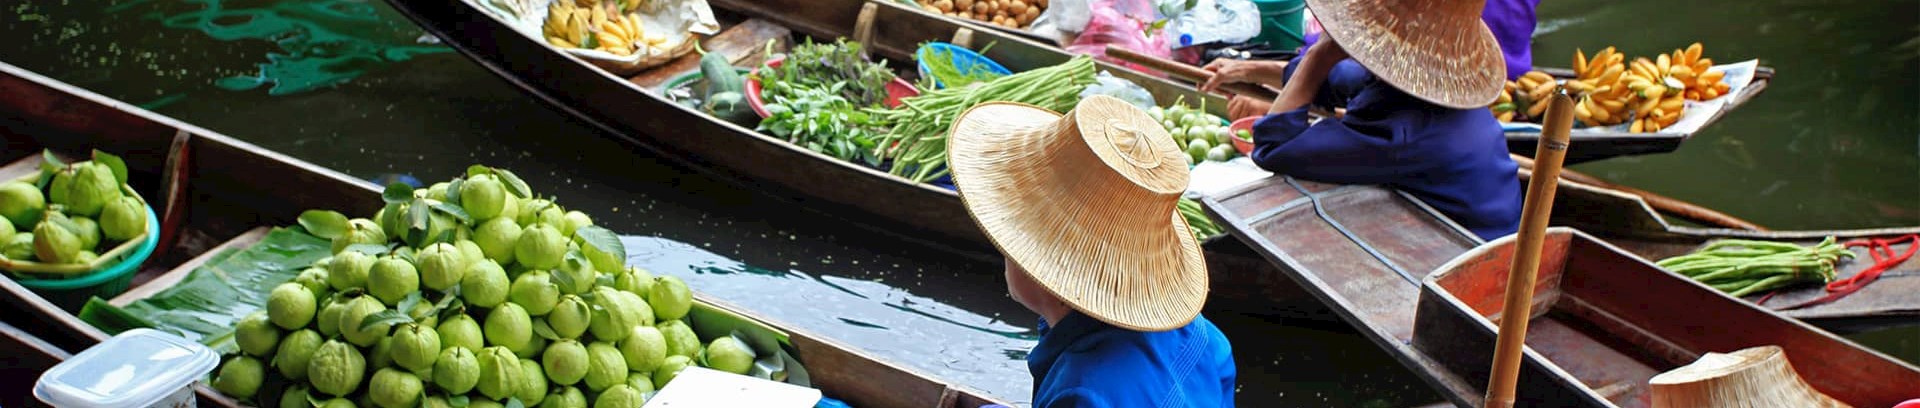 Billede af både med fragt af grøntsager og frugt i Bangkok, Thailand